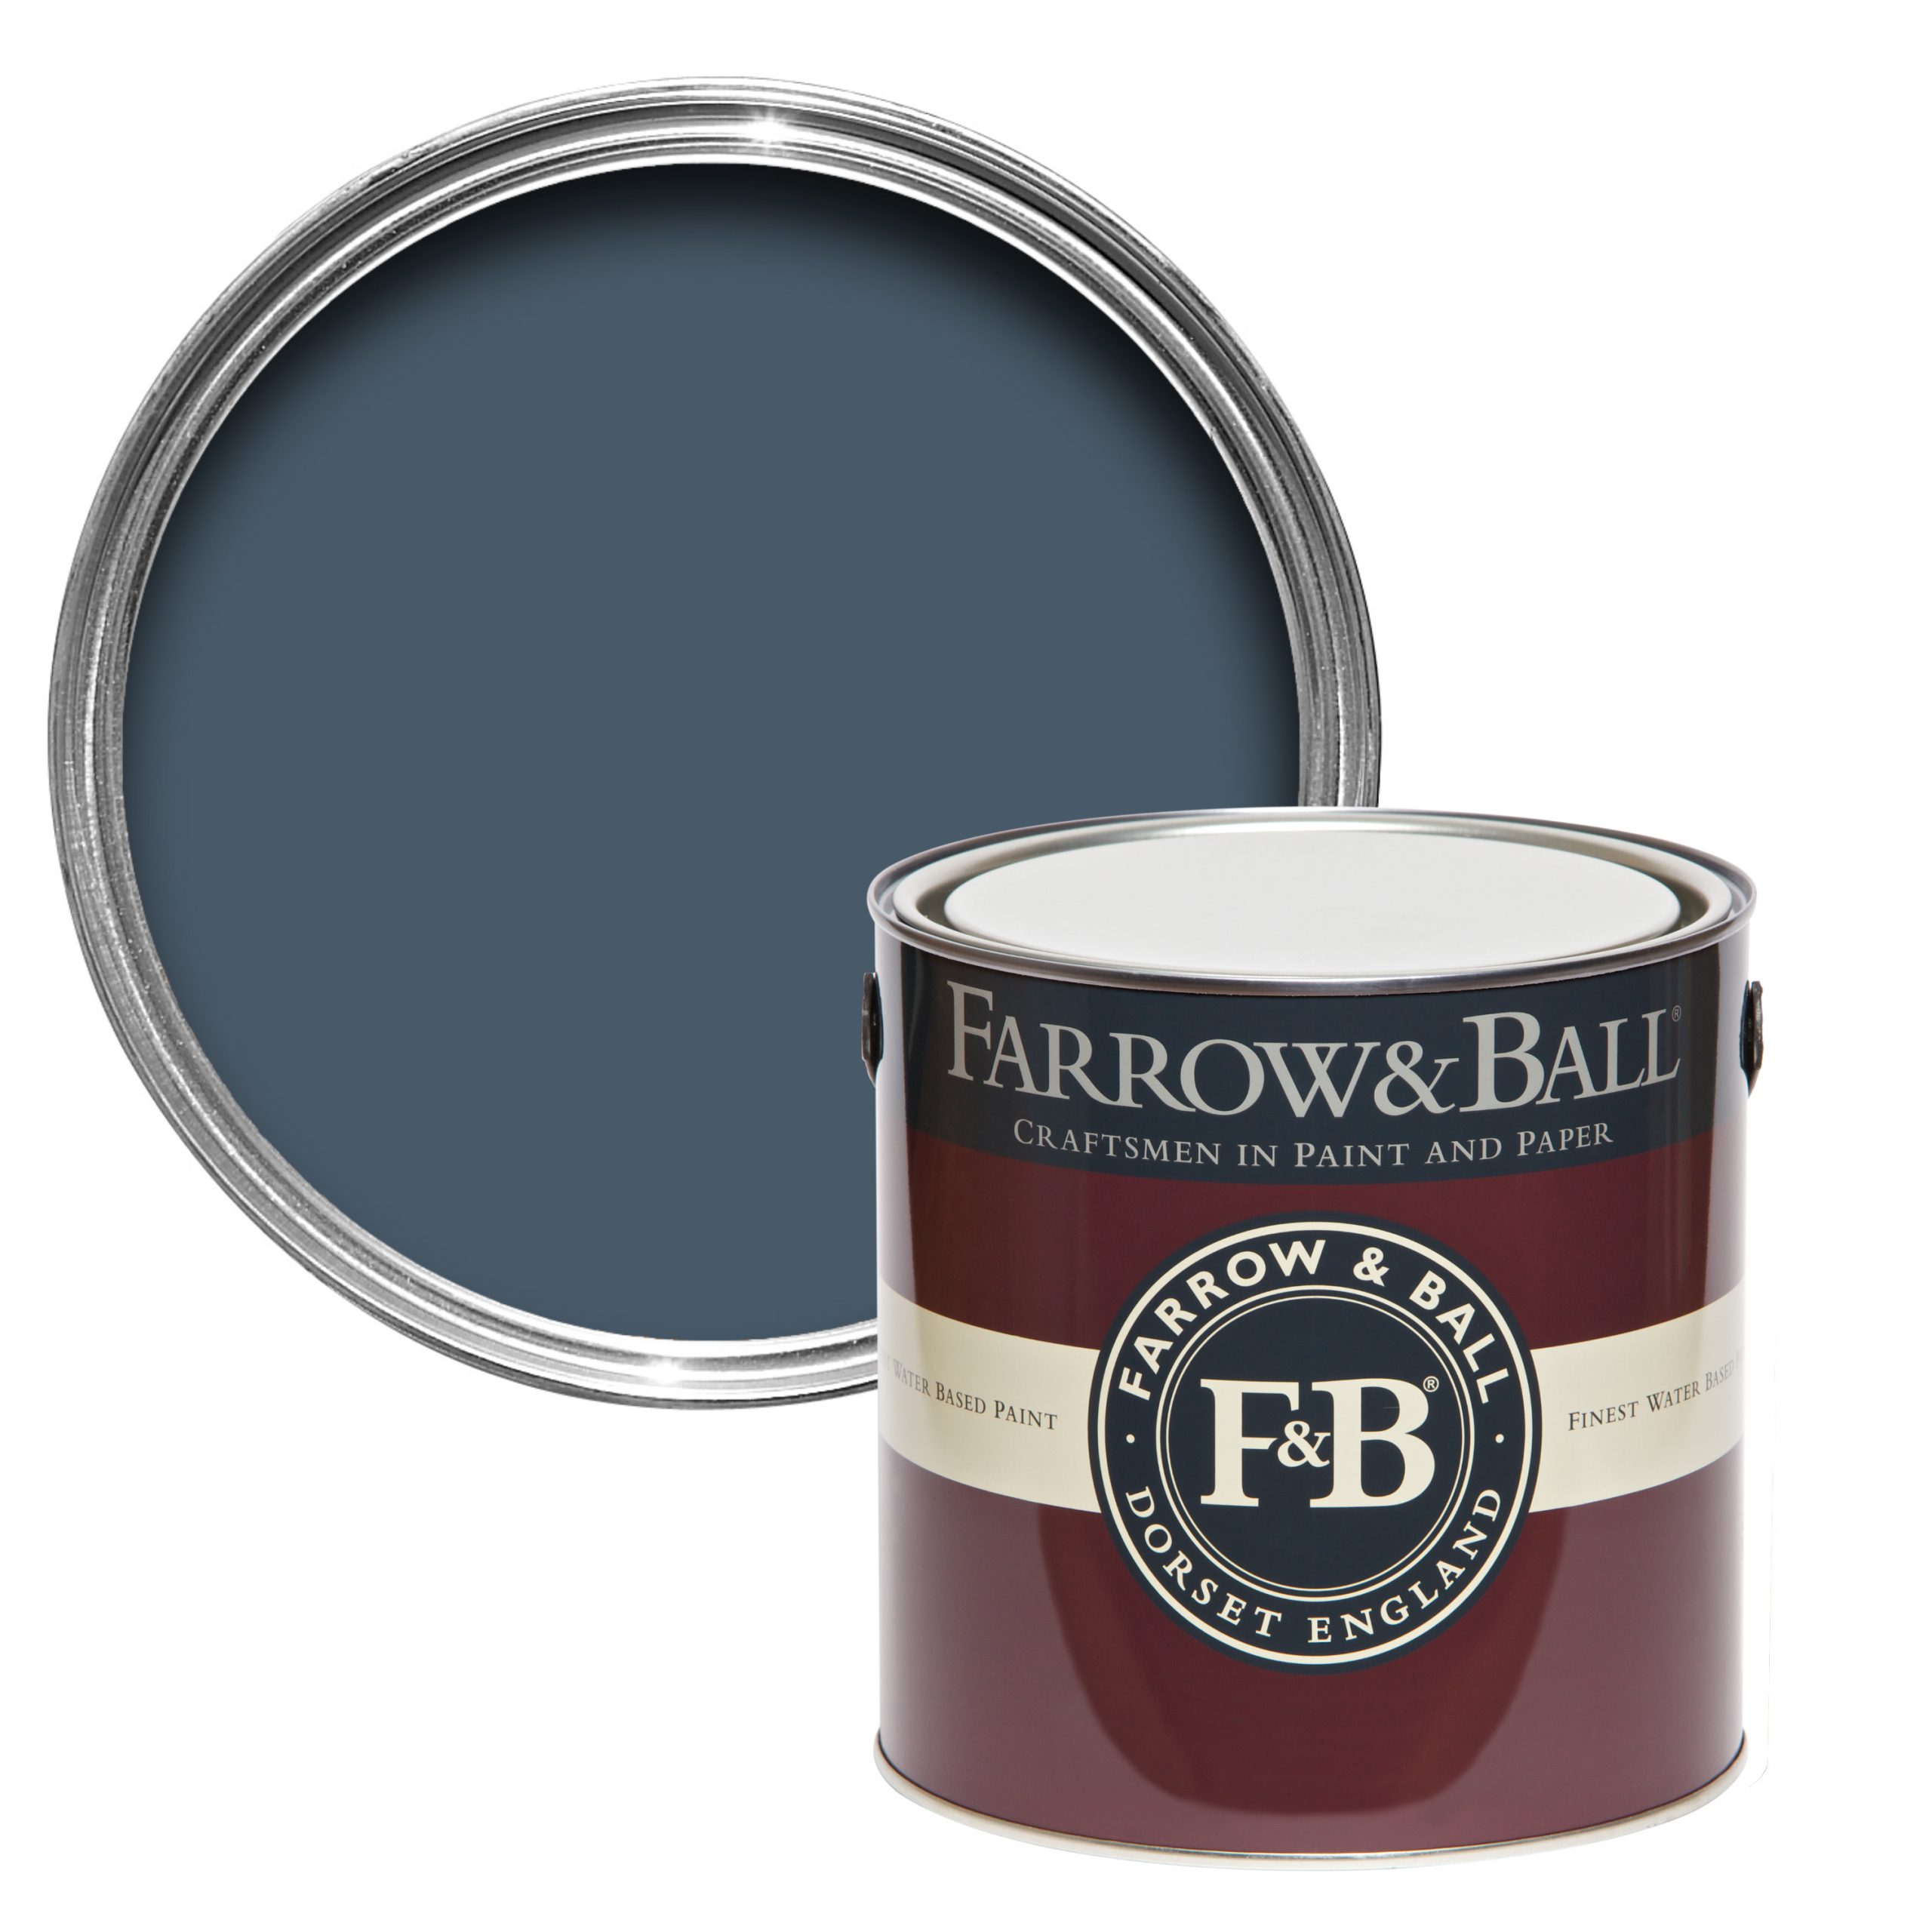 Vopsea albastra satinata 20% luciu pentru interior Farrow & Ball Estate Eggshell Stiffkey Blue No. 281 2.5 Litri